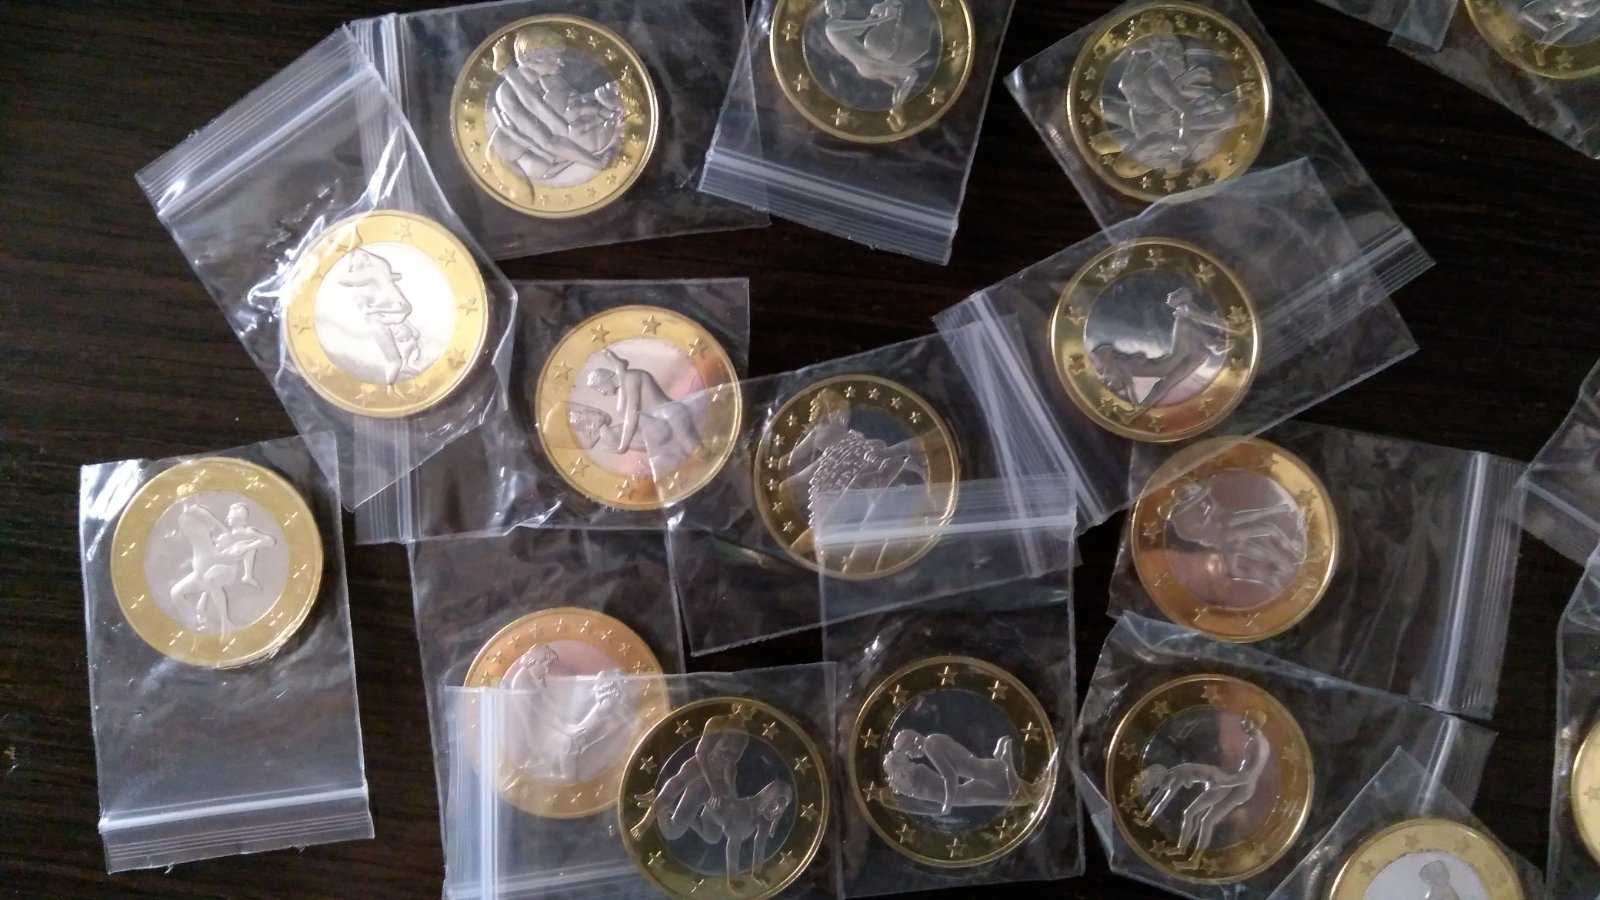 Сувенірна монета еротична  6 евро с позами камасутра